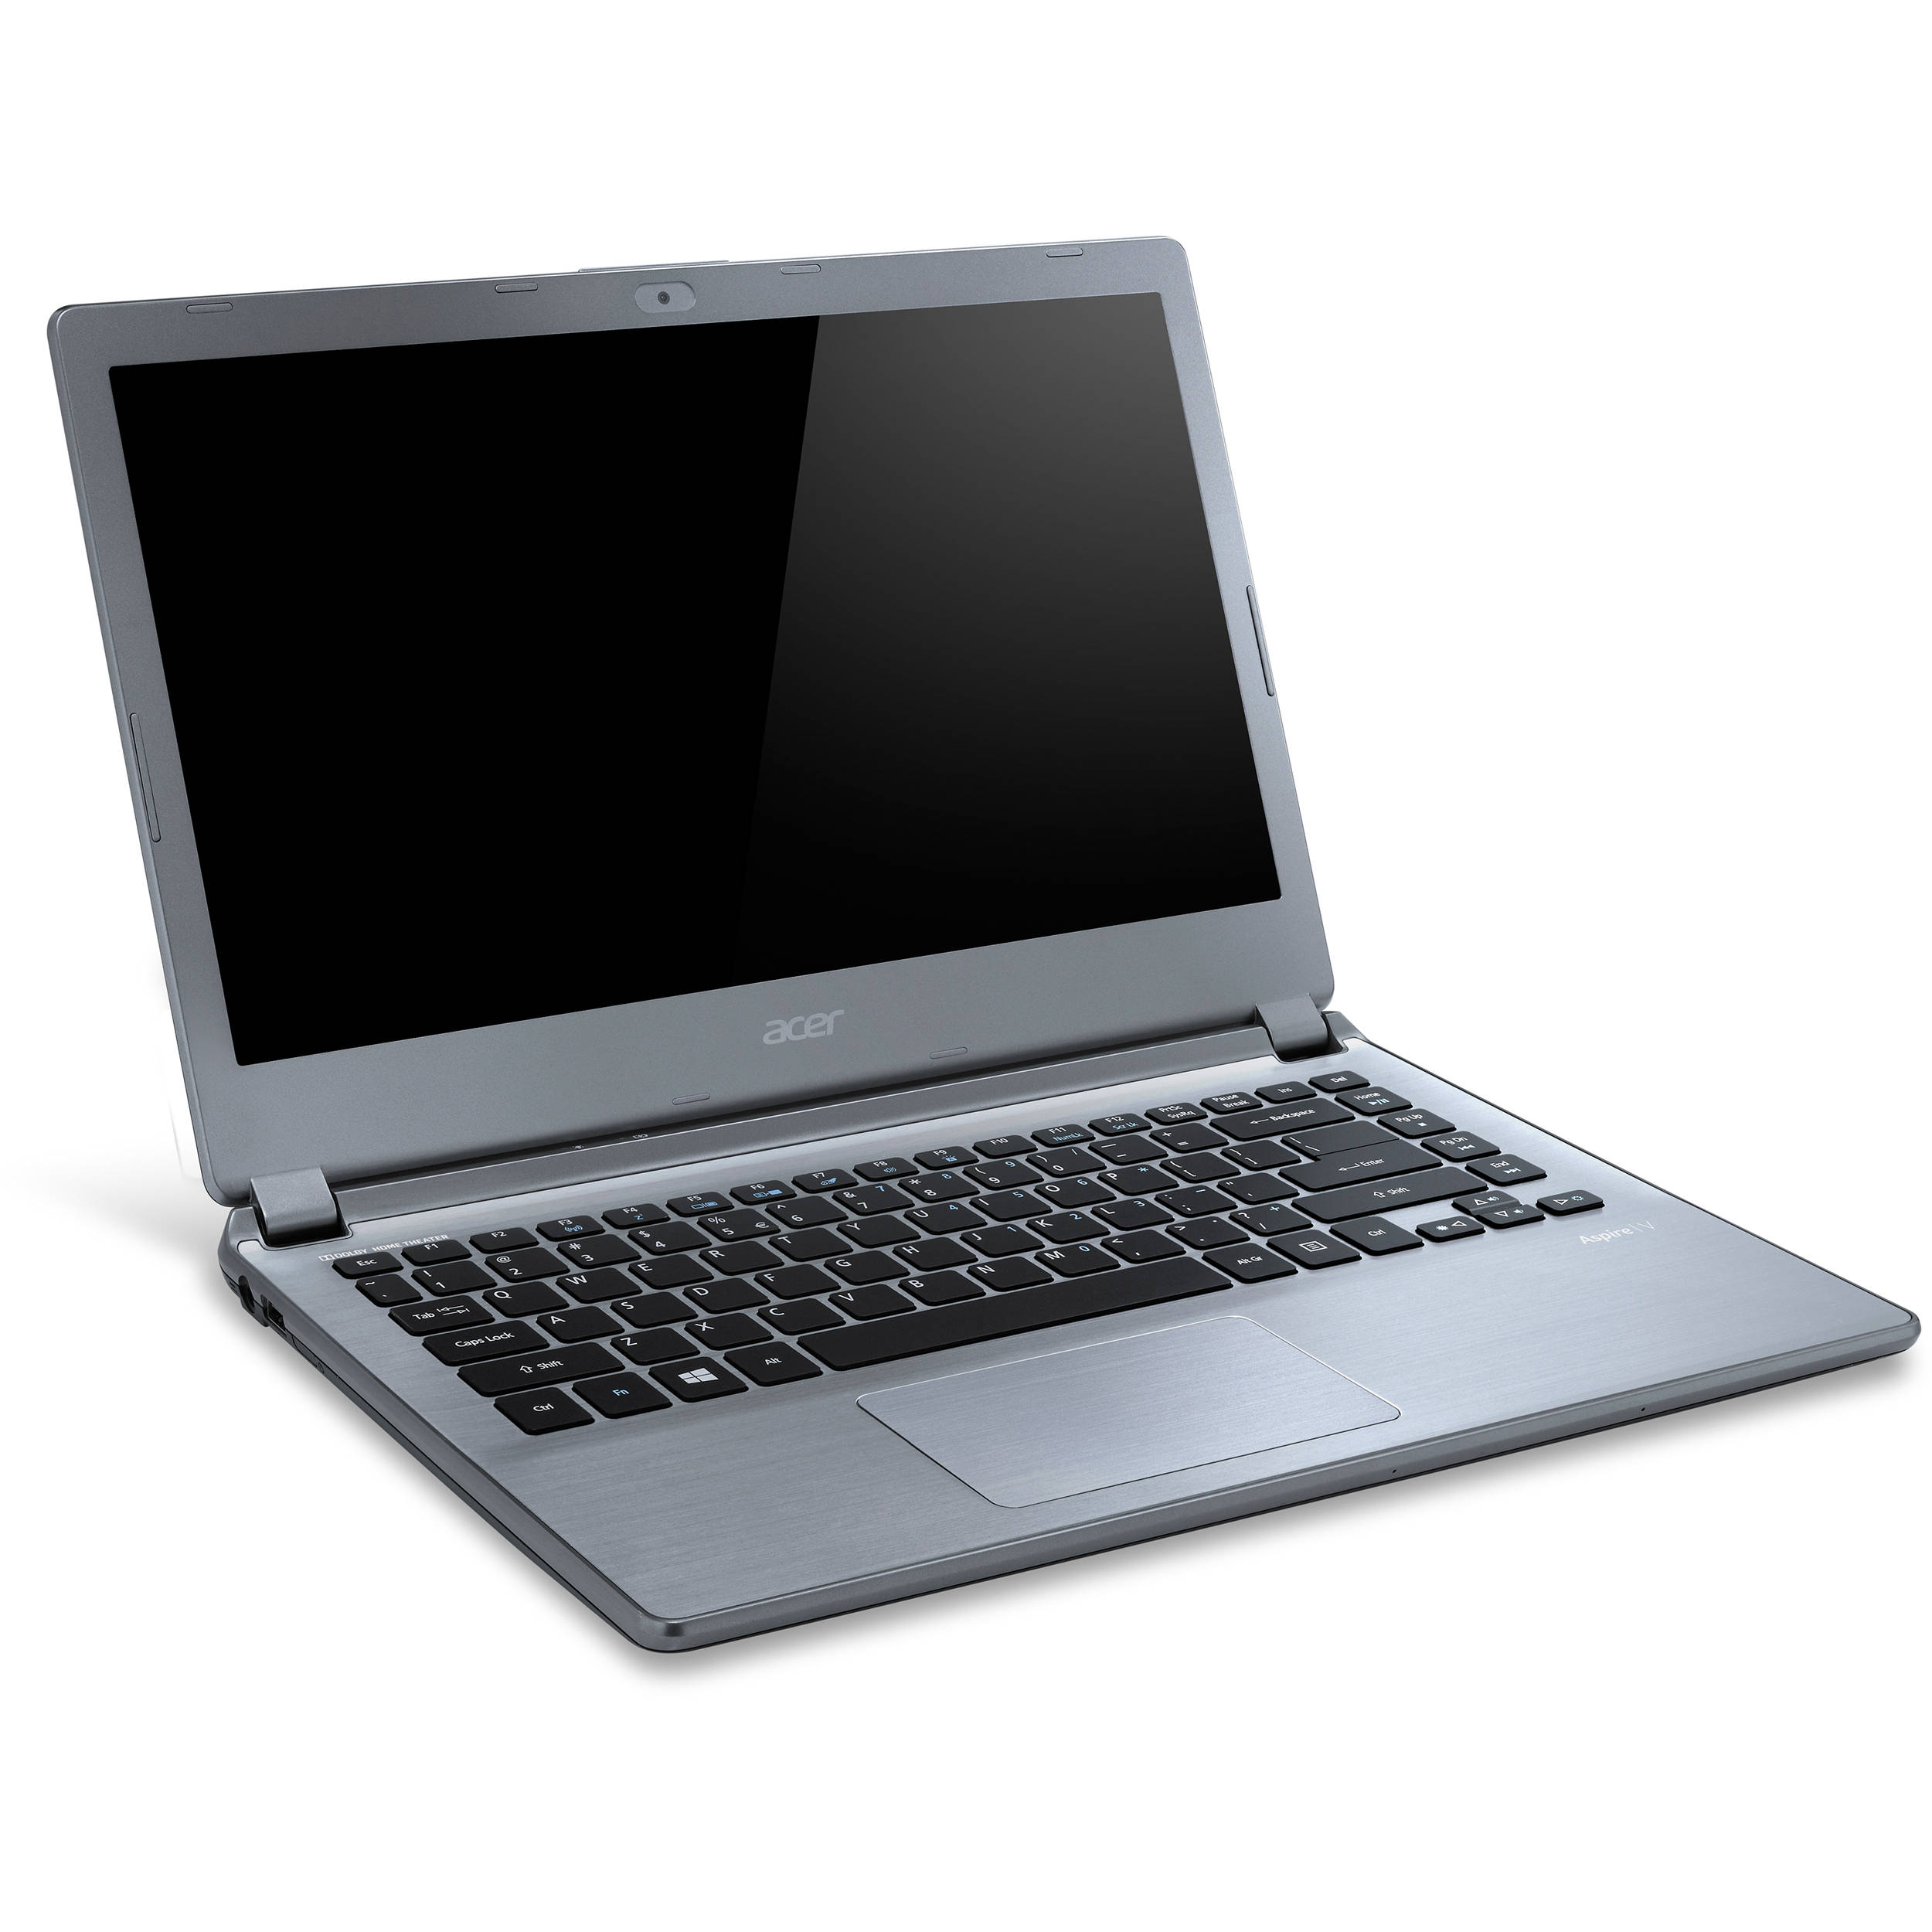 Acer Aspire V7-582PG Notebook